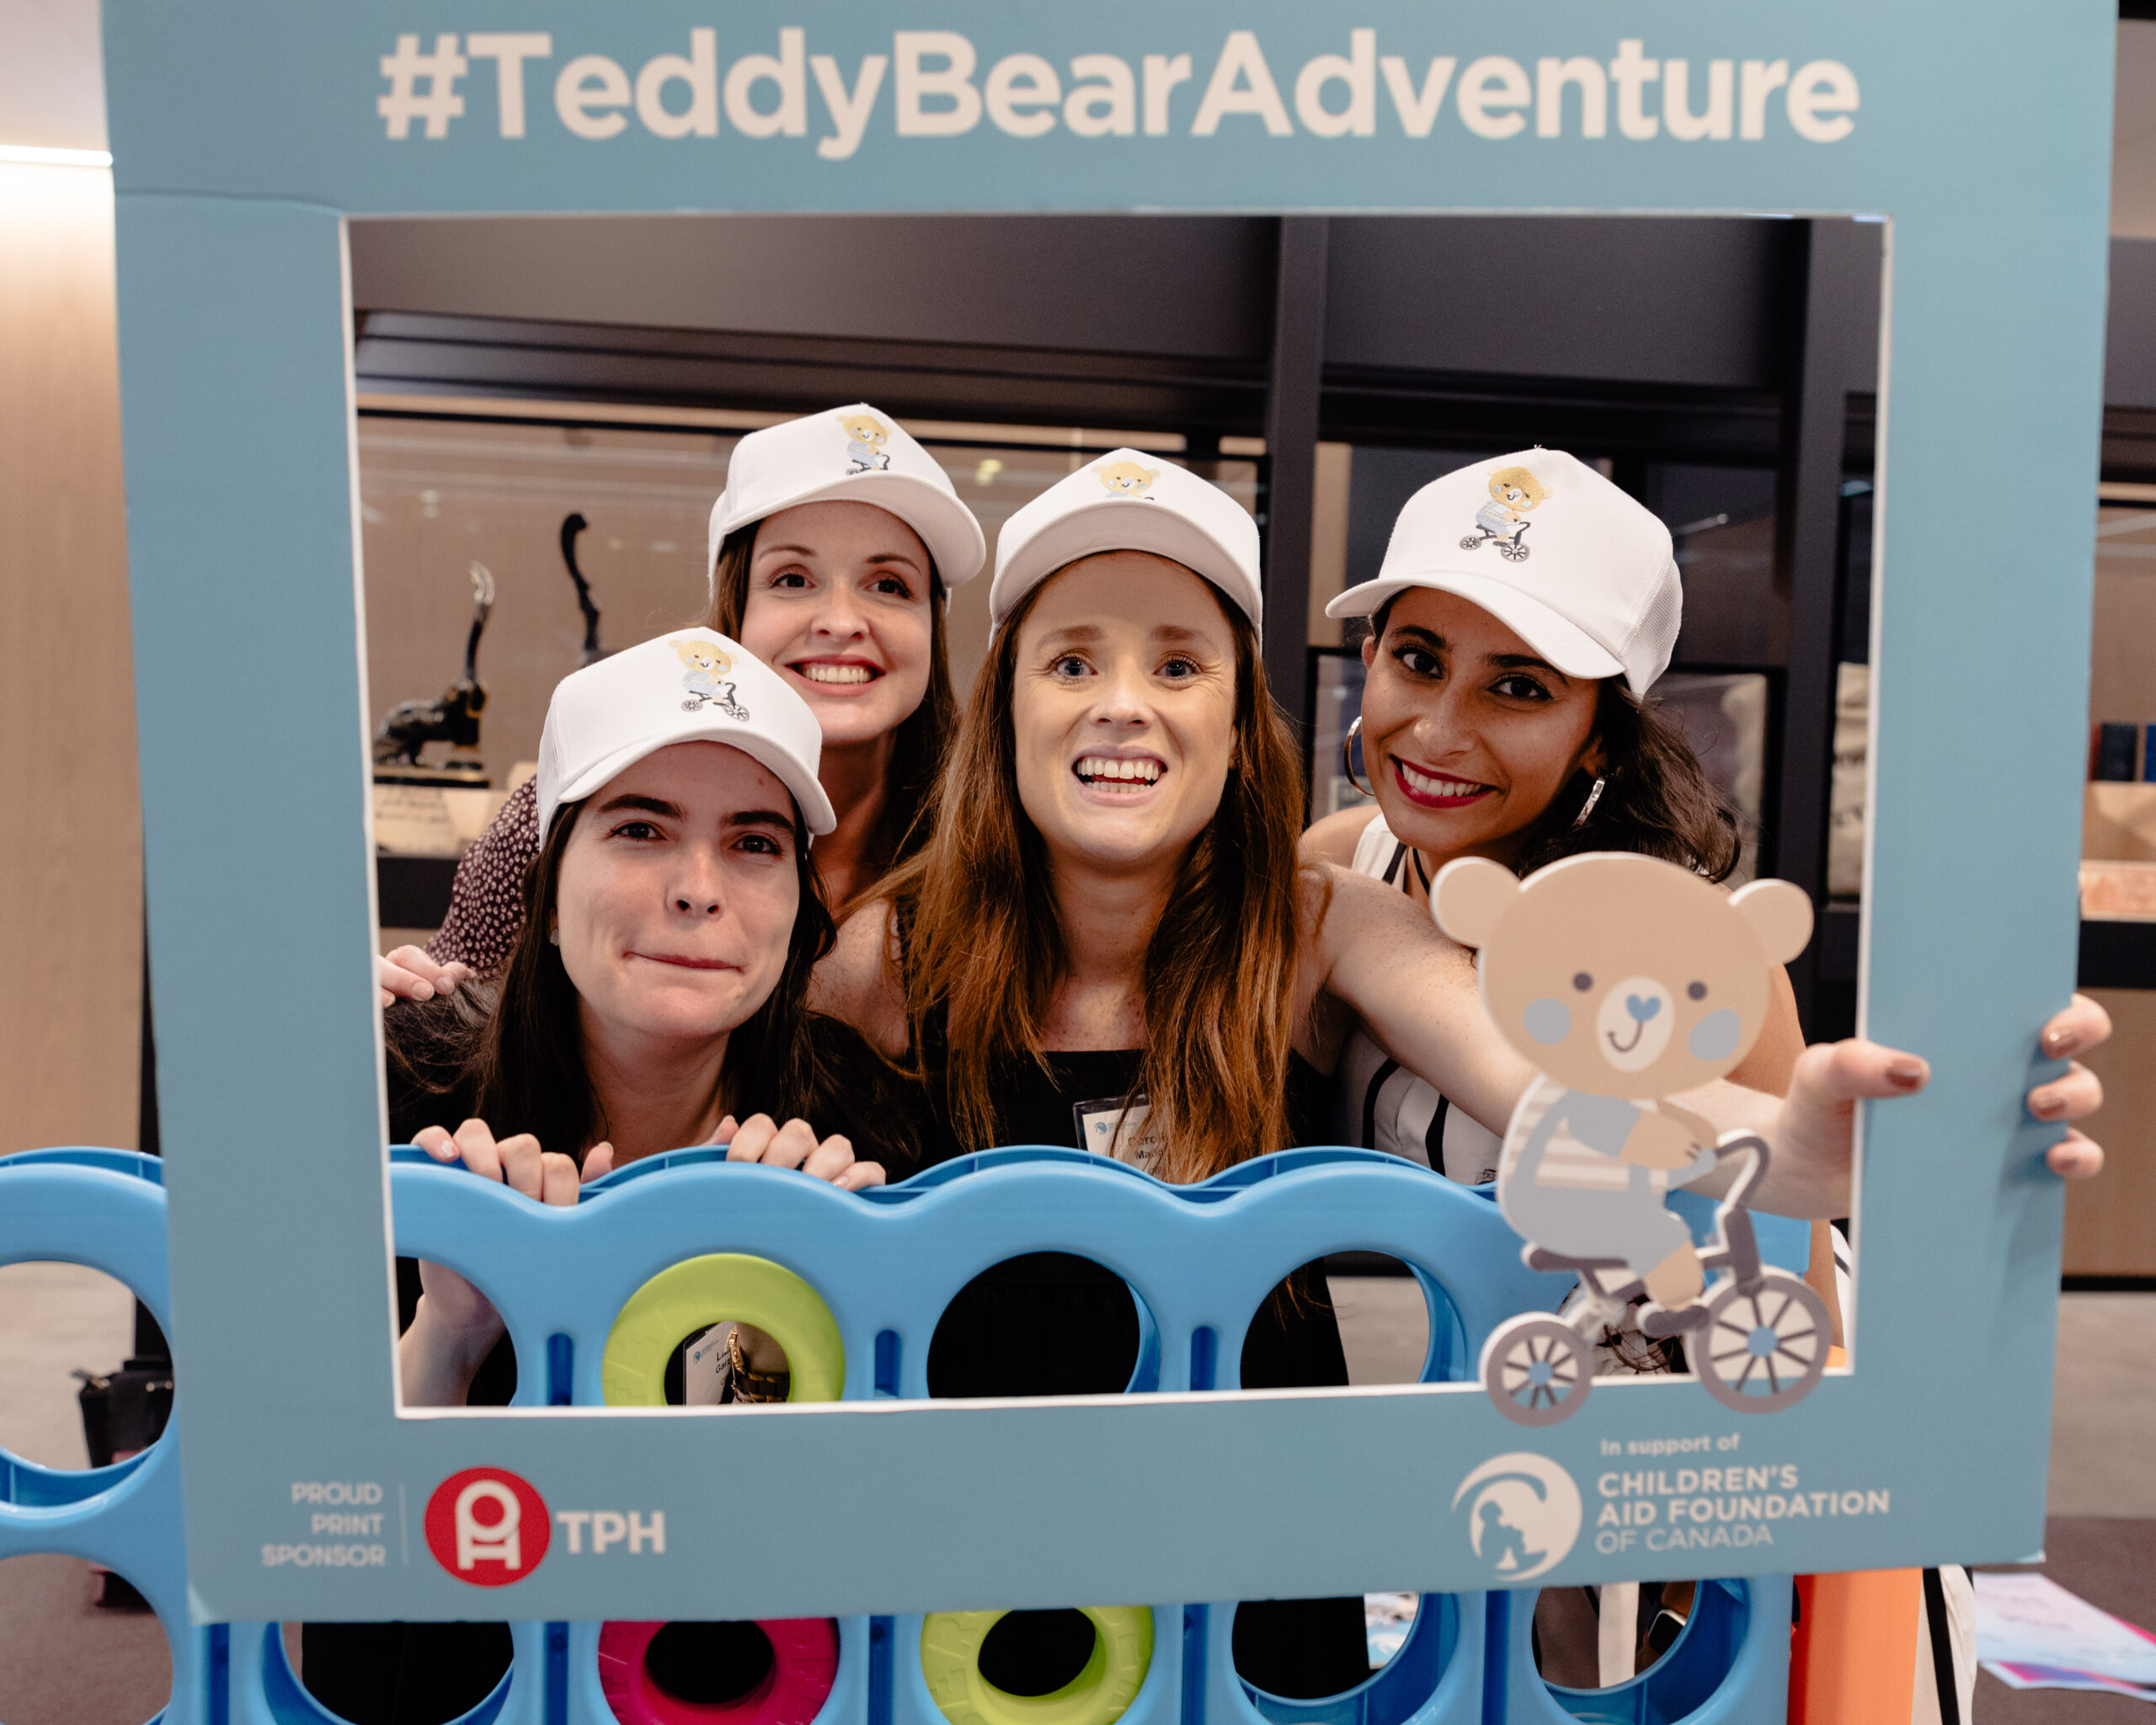 A photo from Teddy Bear Adventure